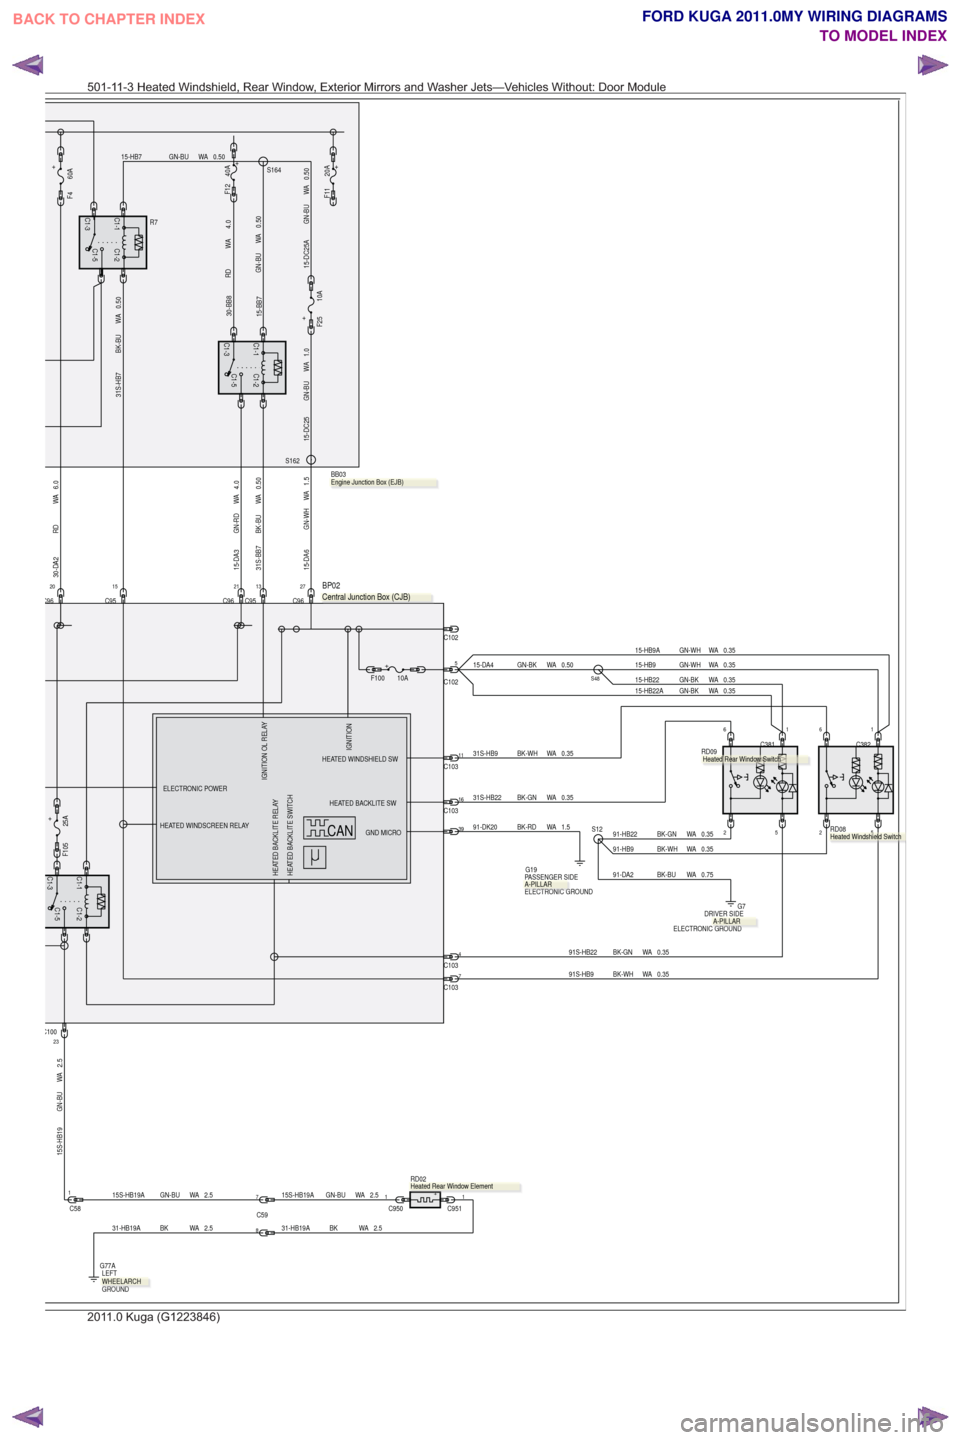 FORD KUGA 2011 1.G Wiring Diagram Workshop Manual 2.5
WA
GN-BU
15S-HB19
C1-5
C1-1C1-3
C1-2
23C100
2
C381
66
C382
0.35
WA
BK-GN
91-HB22
0.35
WA
BK-WH
31S-HB9C10311
0.35
WA
BK-GN
31S-HB2216C103
C9621C951520C96
6.0
WA
RD
30-DA24.0
WA
GN-RD
15-DA3
C102
C